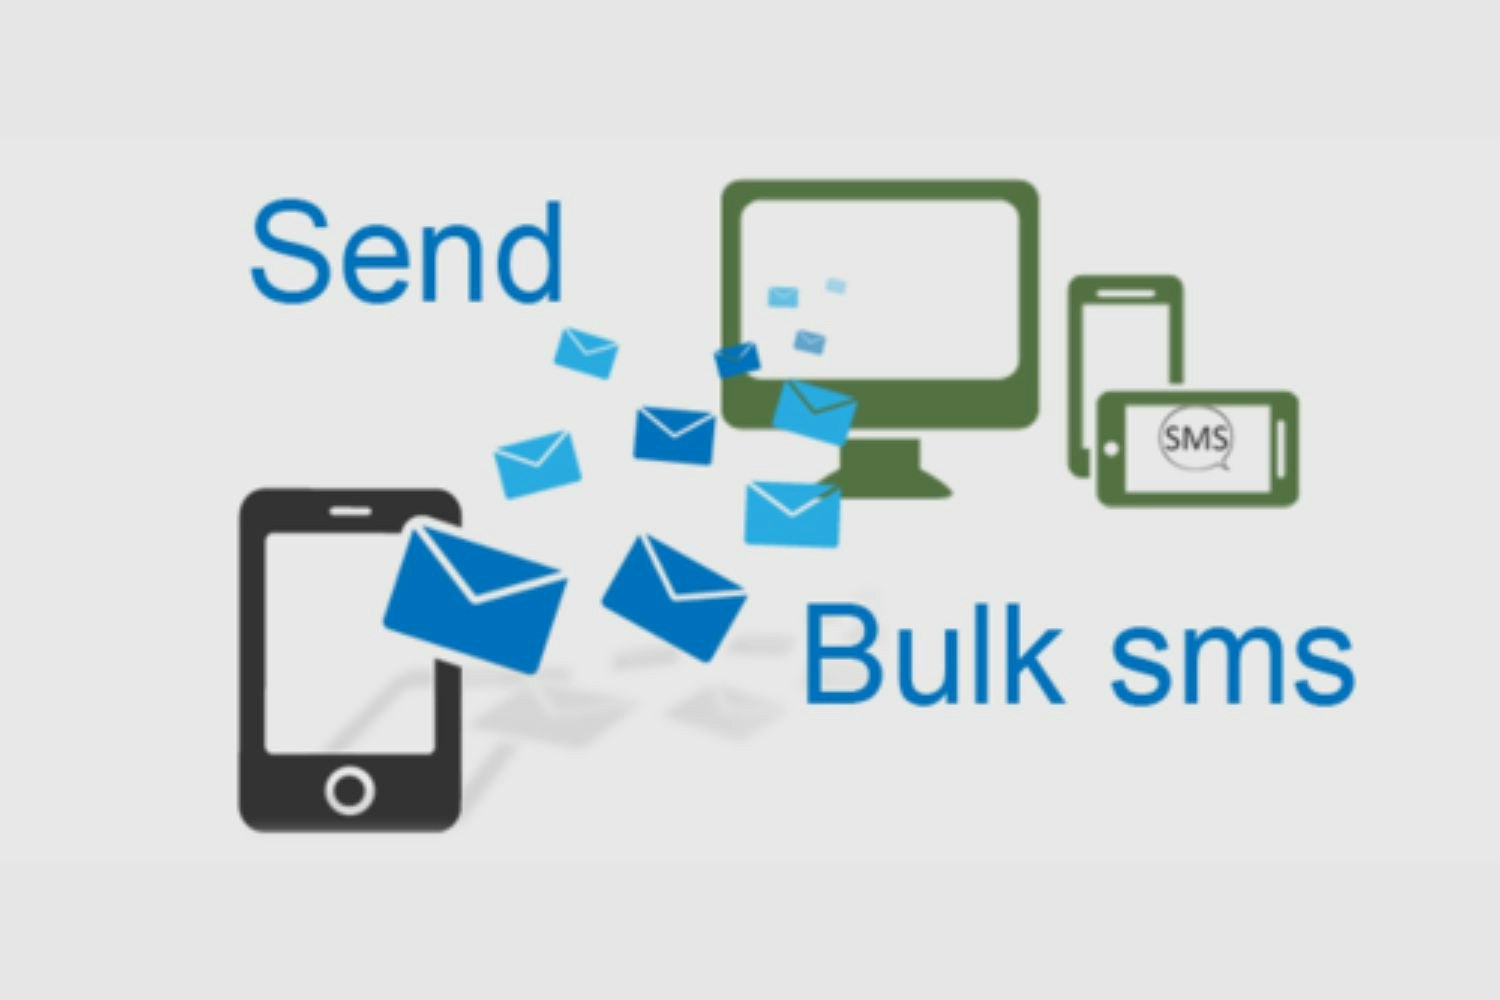 Send SMS. SMS Soft. Mass SMS. Sms leads